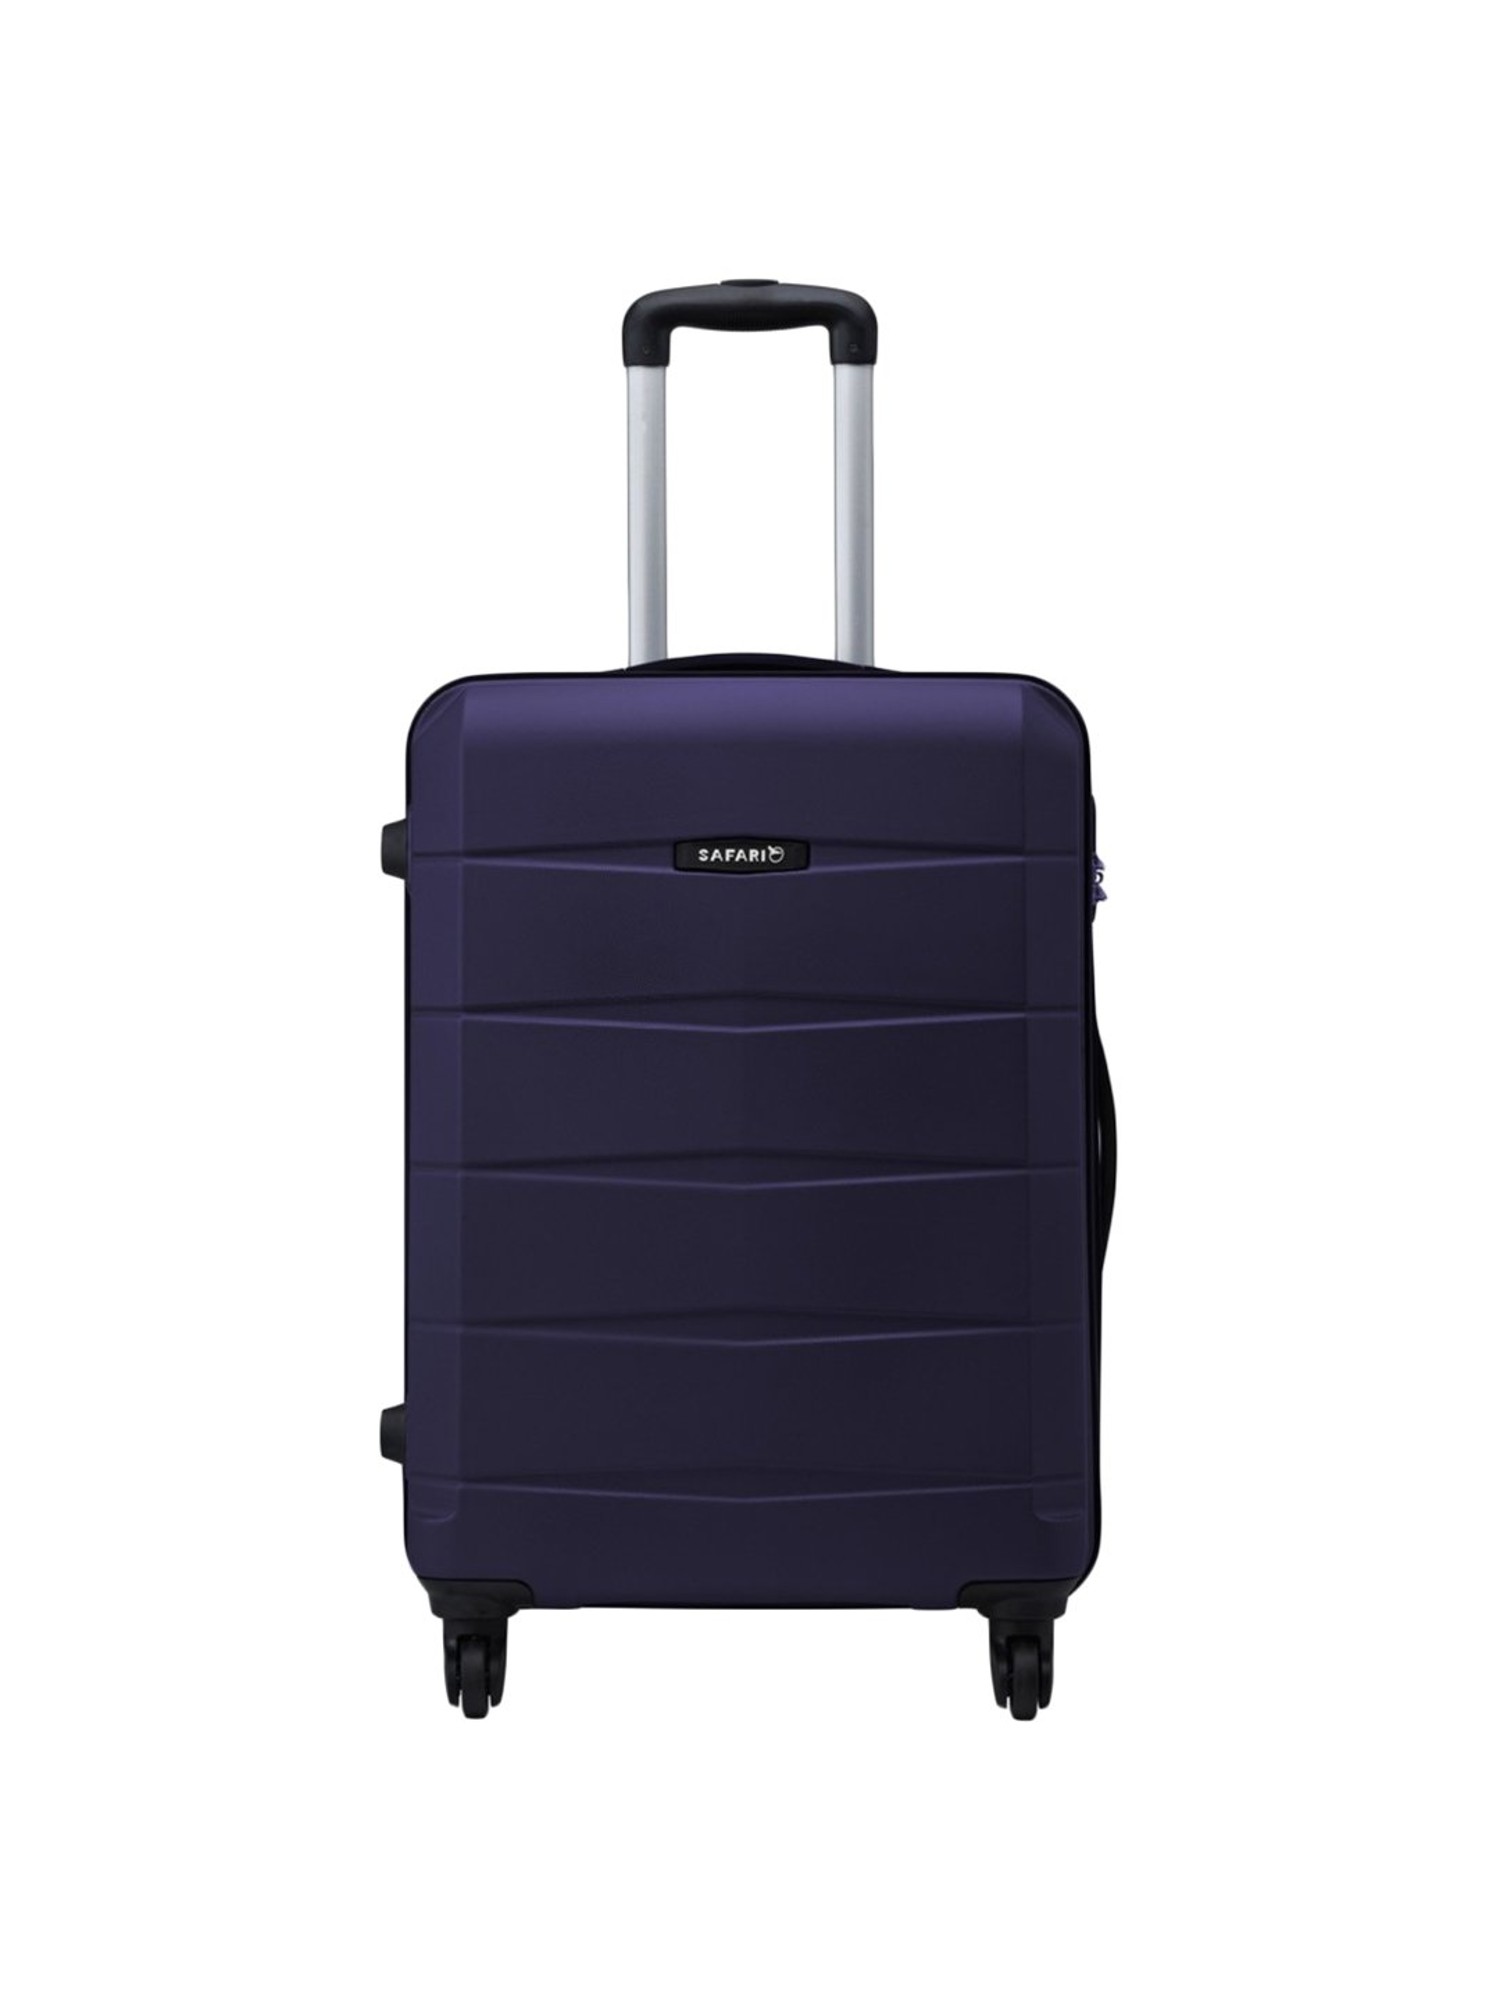 SAFARI DAPPER 75 4W Check-in Suitcase - 30 inch - Price History